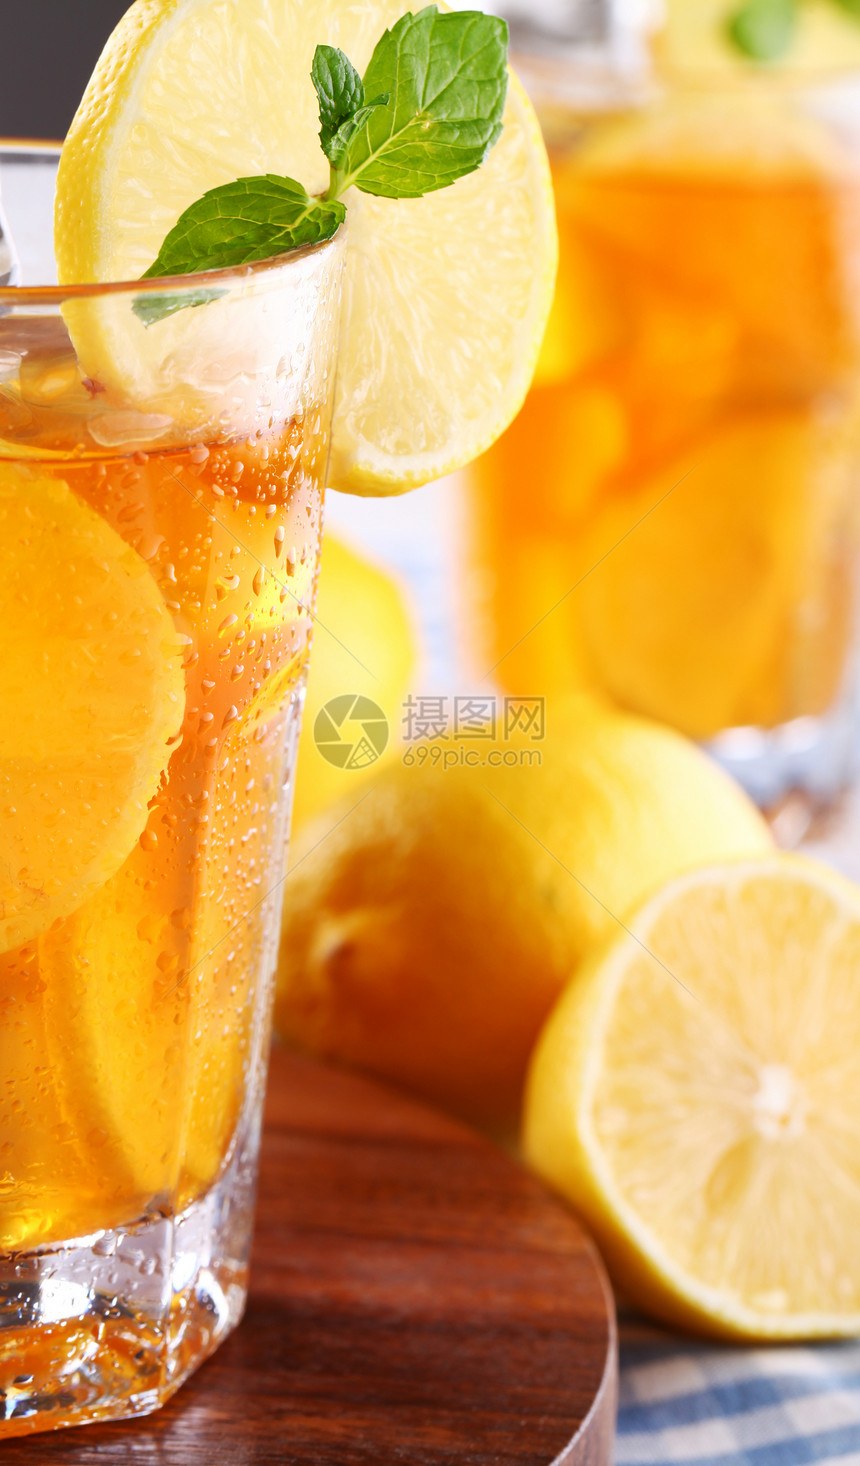 新鲜冷冰茶 加柠檬和薄荷叶子反射时间玻璃美食冰镇水果橙子桌布草本植物图片